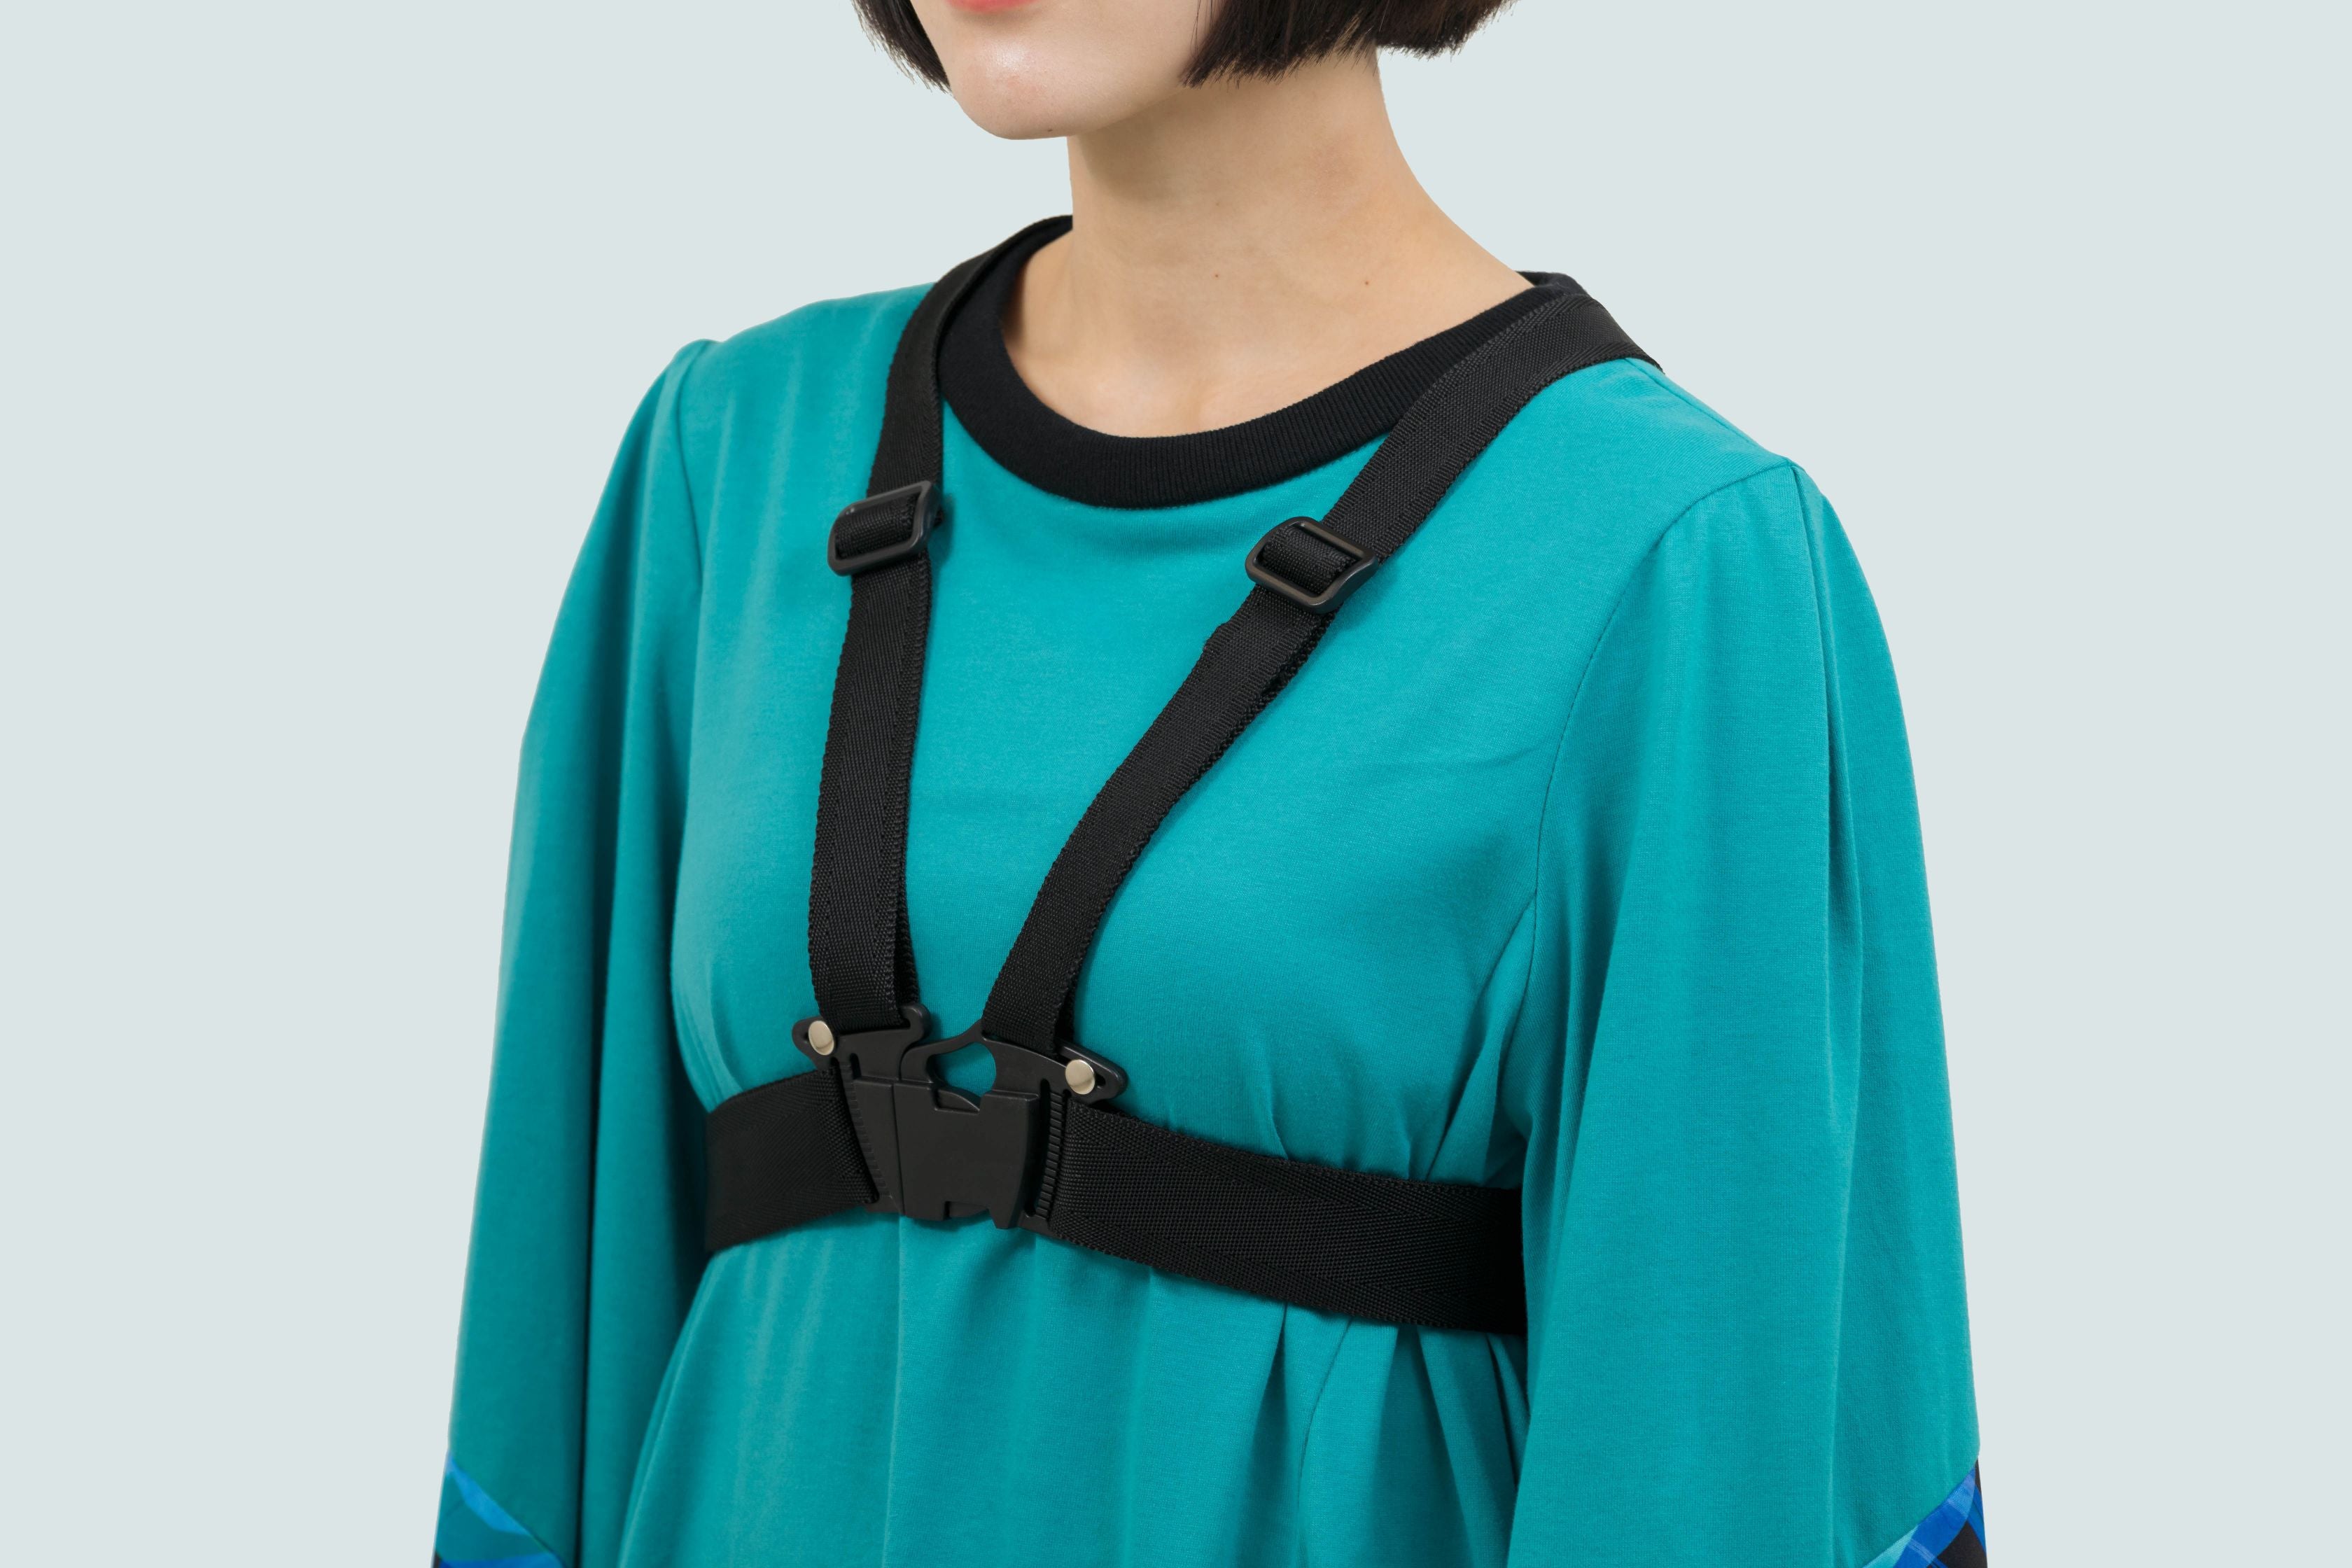 安全装備ショートハーネス / Safety equipment short harness